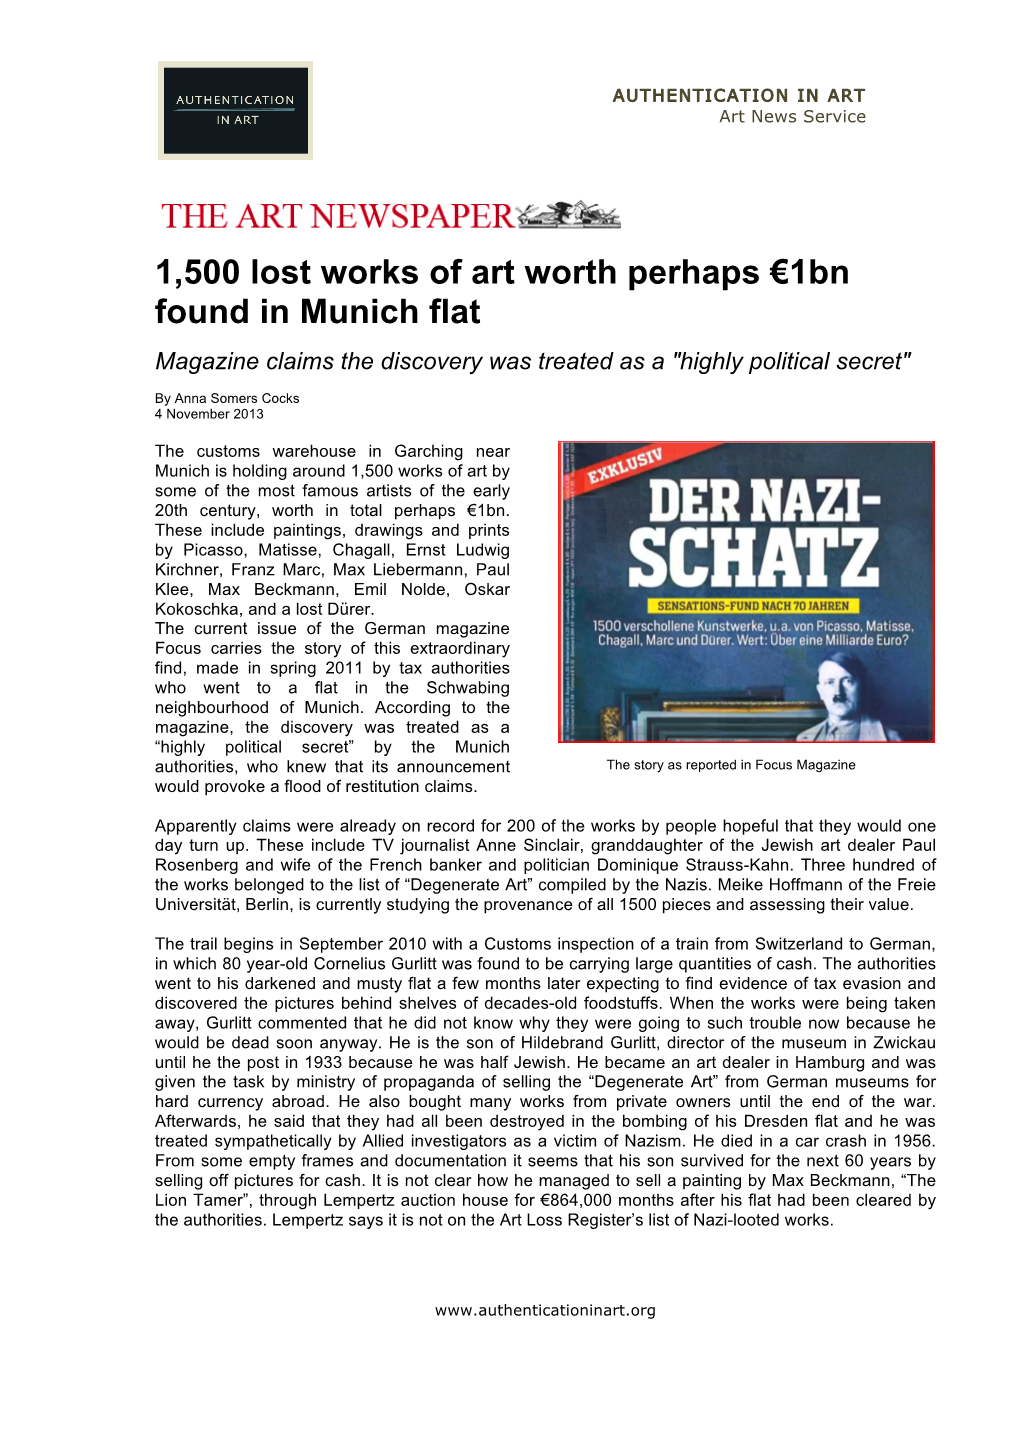 1500 Lost Works of Art Worth Perhaps €1Bn Found in Munich Flat